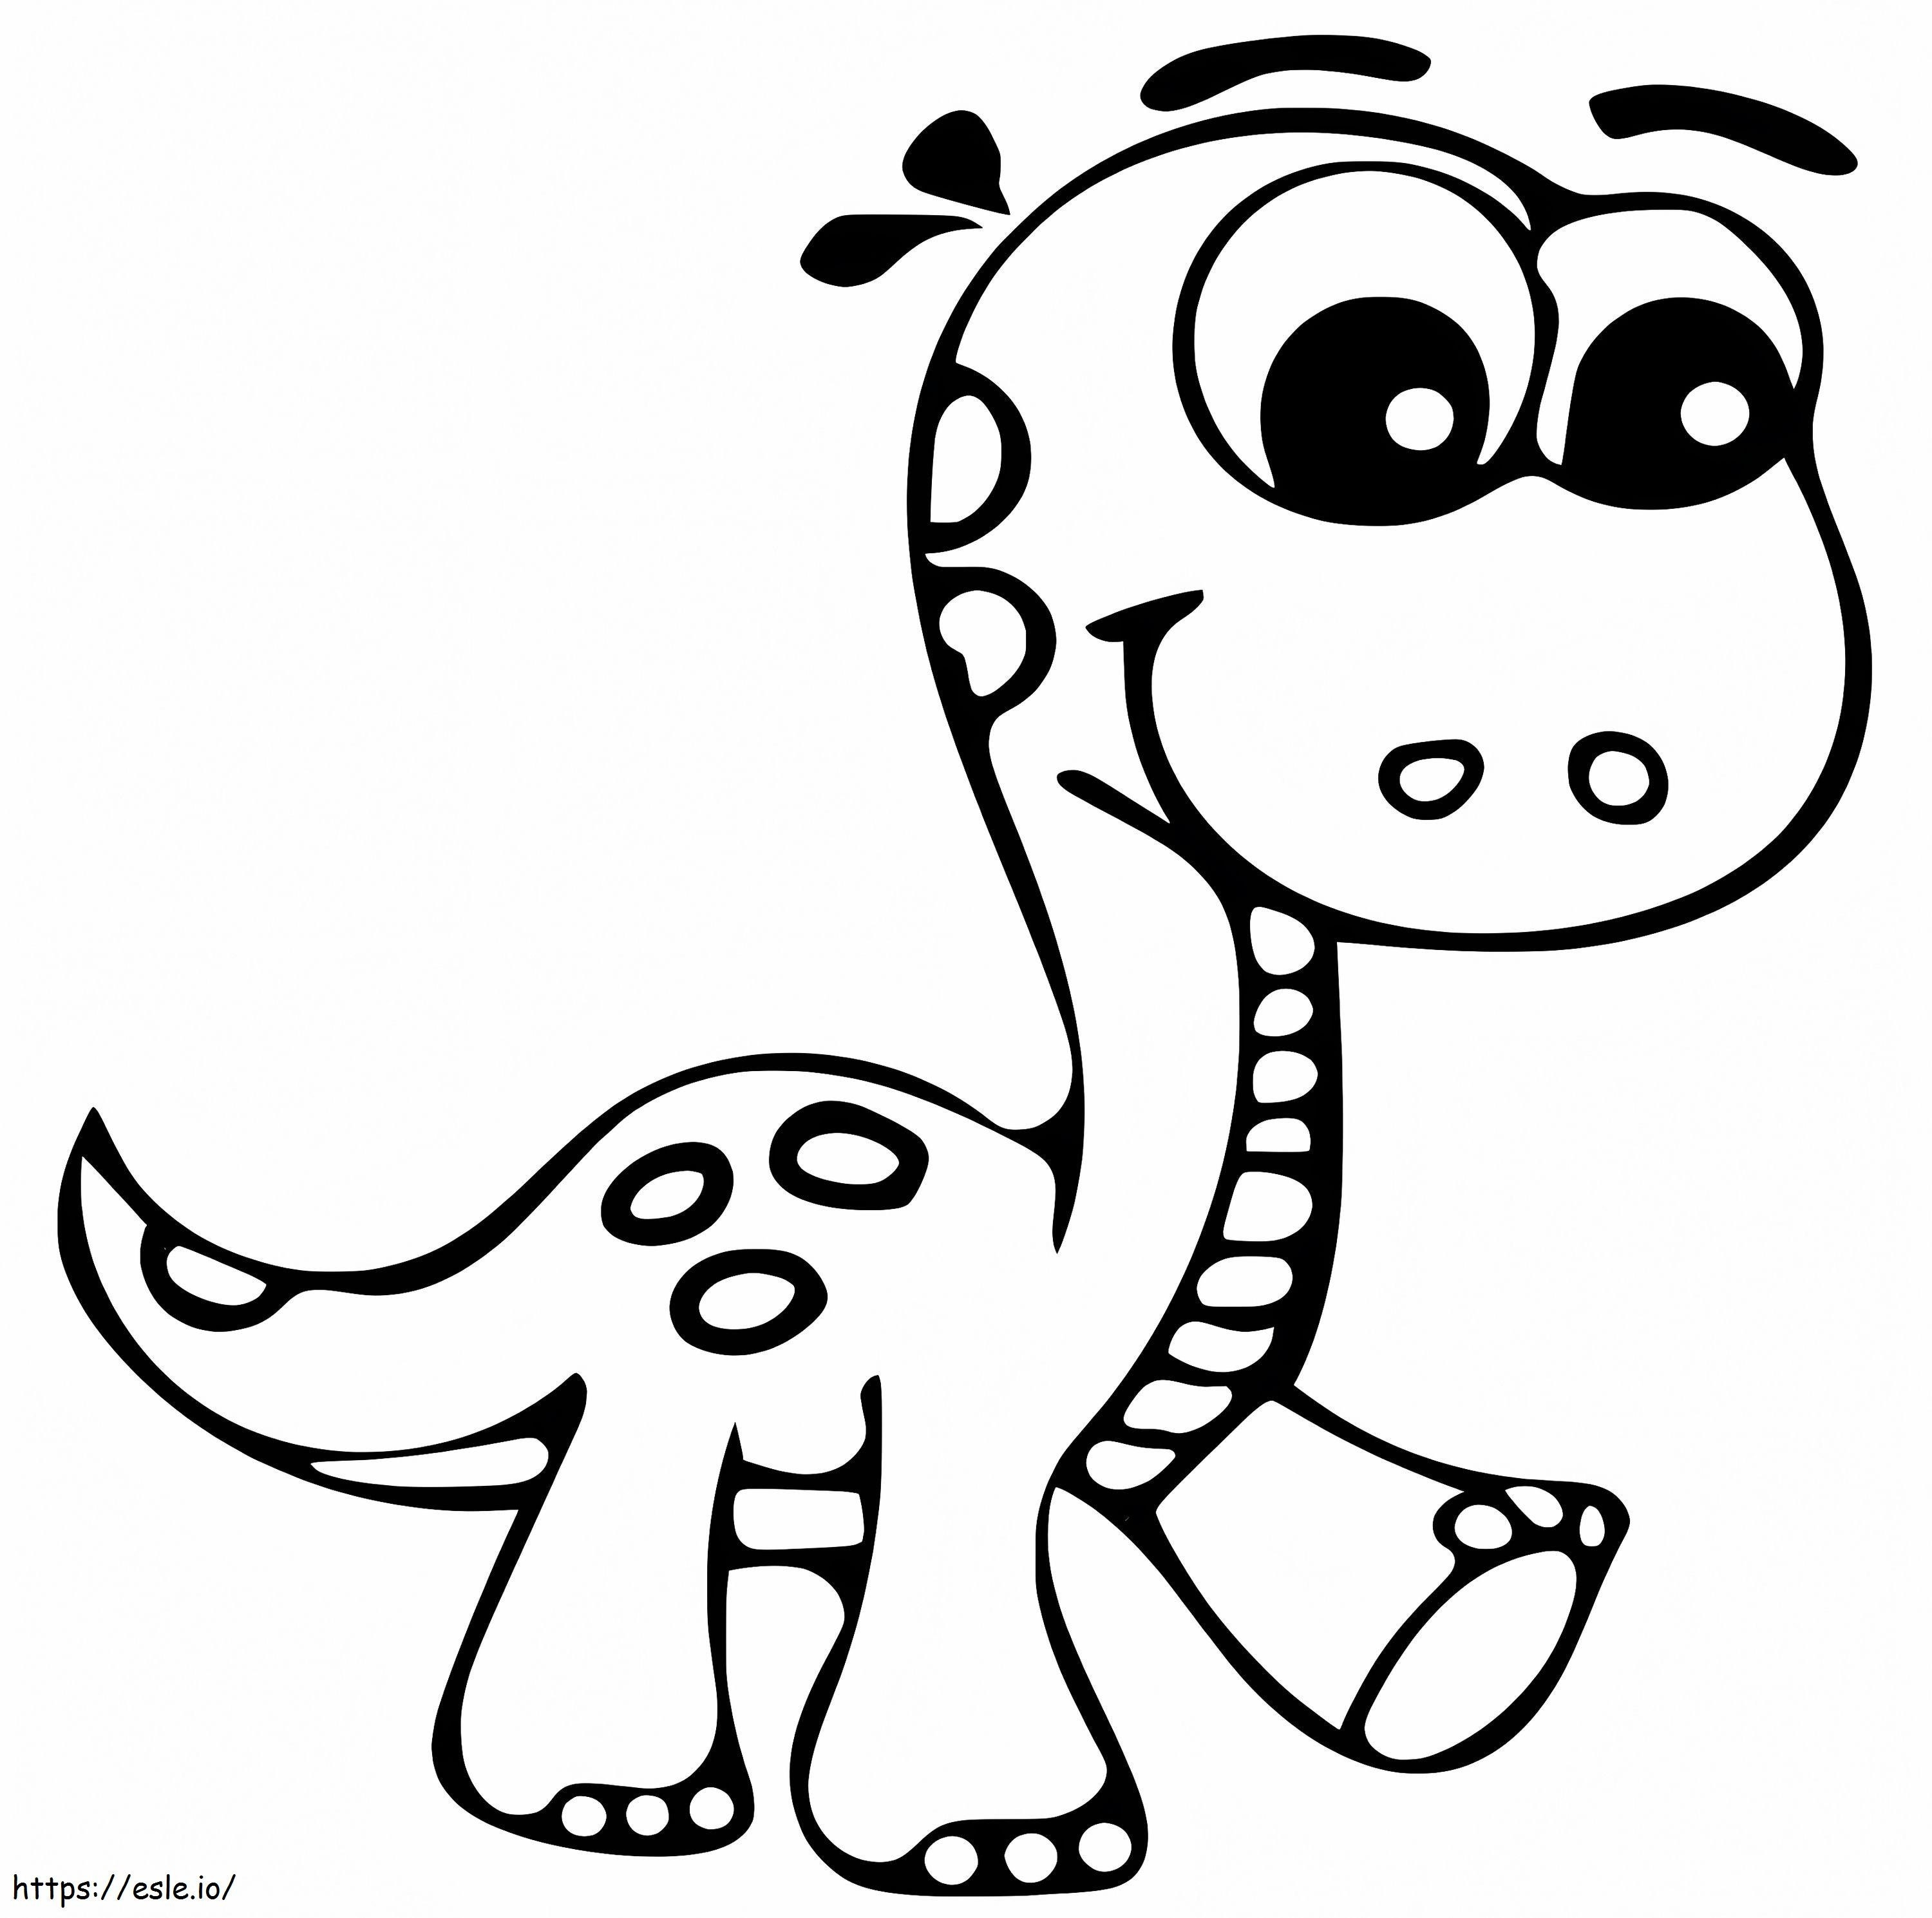 Niedlicher Kindergarten-Dinosaurier ausmalbilder